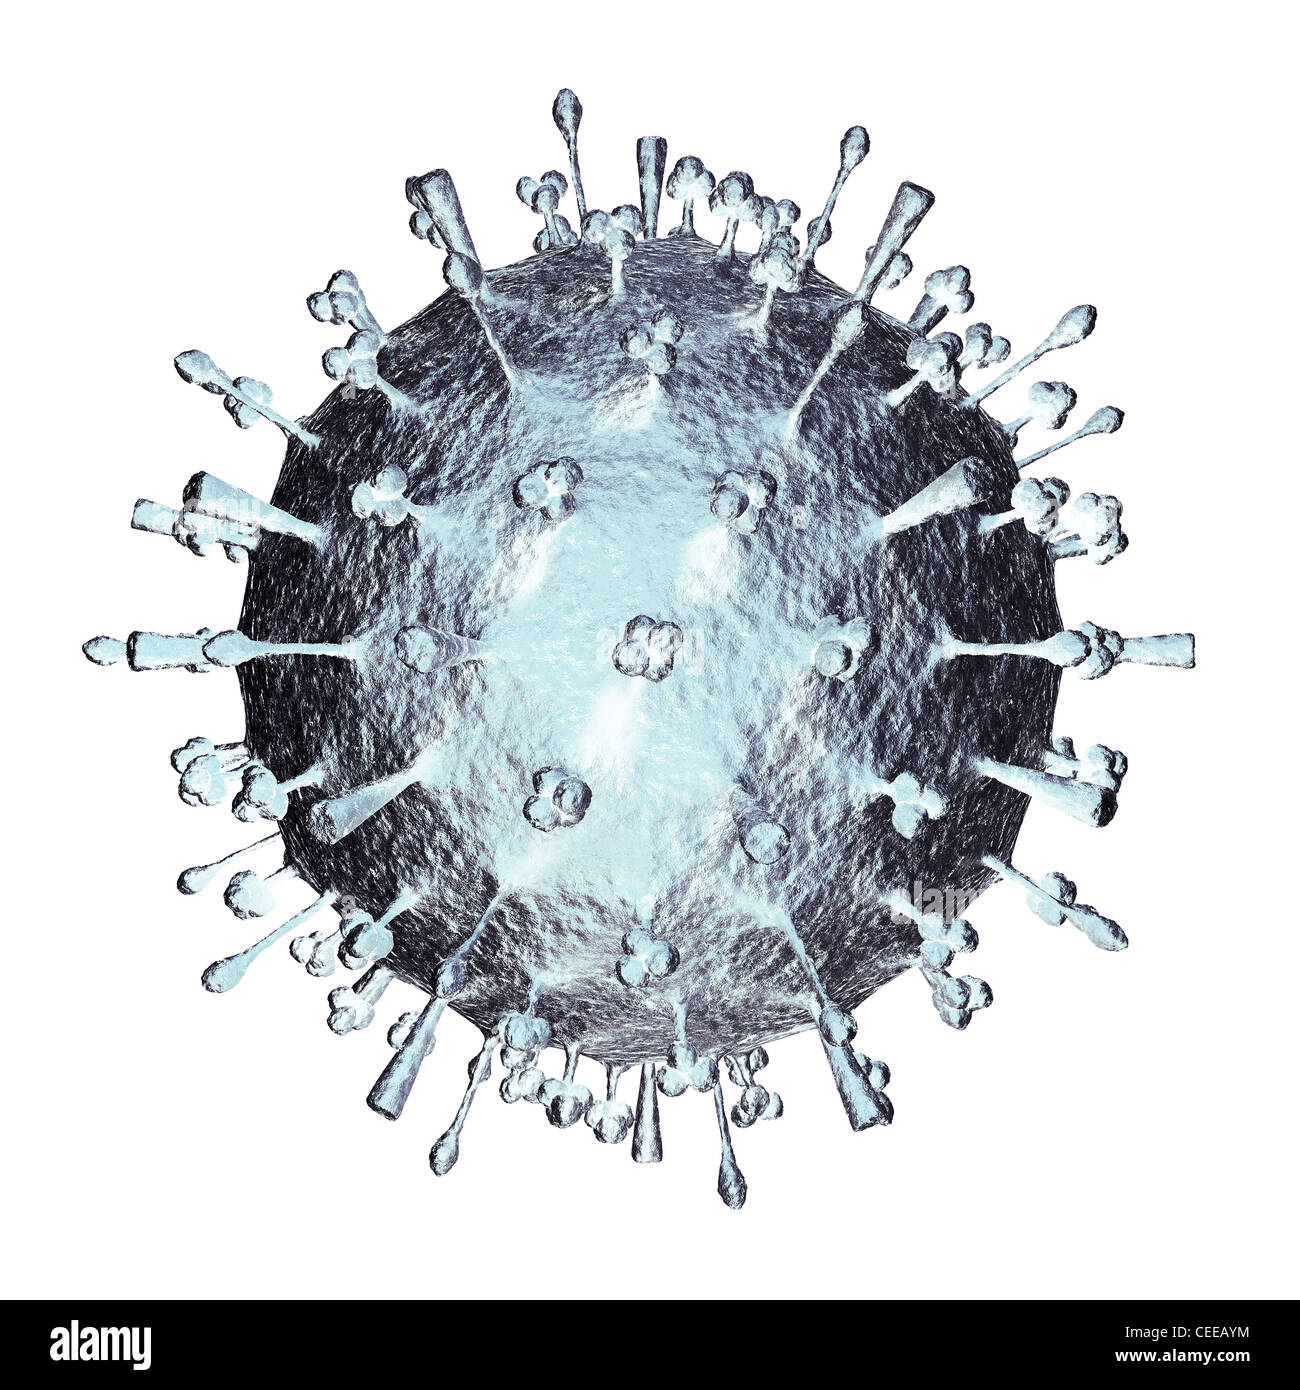 Grippe H1N1 H5N1-Virus Influenza A Virus Partikel Virion. Schweinegrippe, Vogelgrippe-Teilchen structure.3D Abbildung isoliert auf weiss Stockfoto